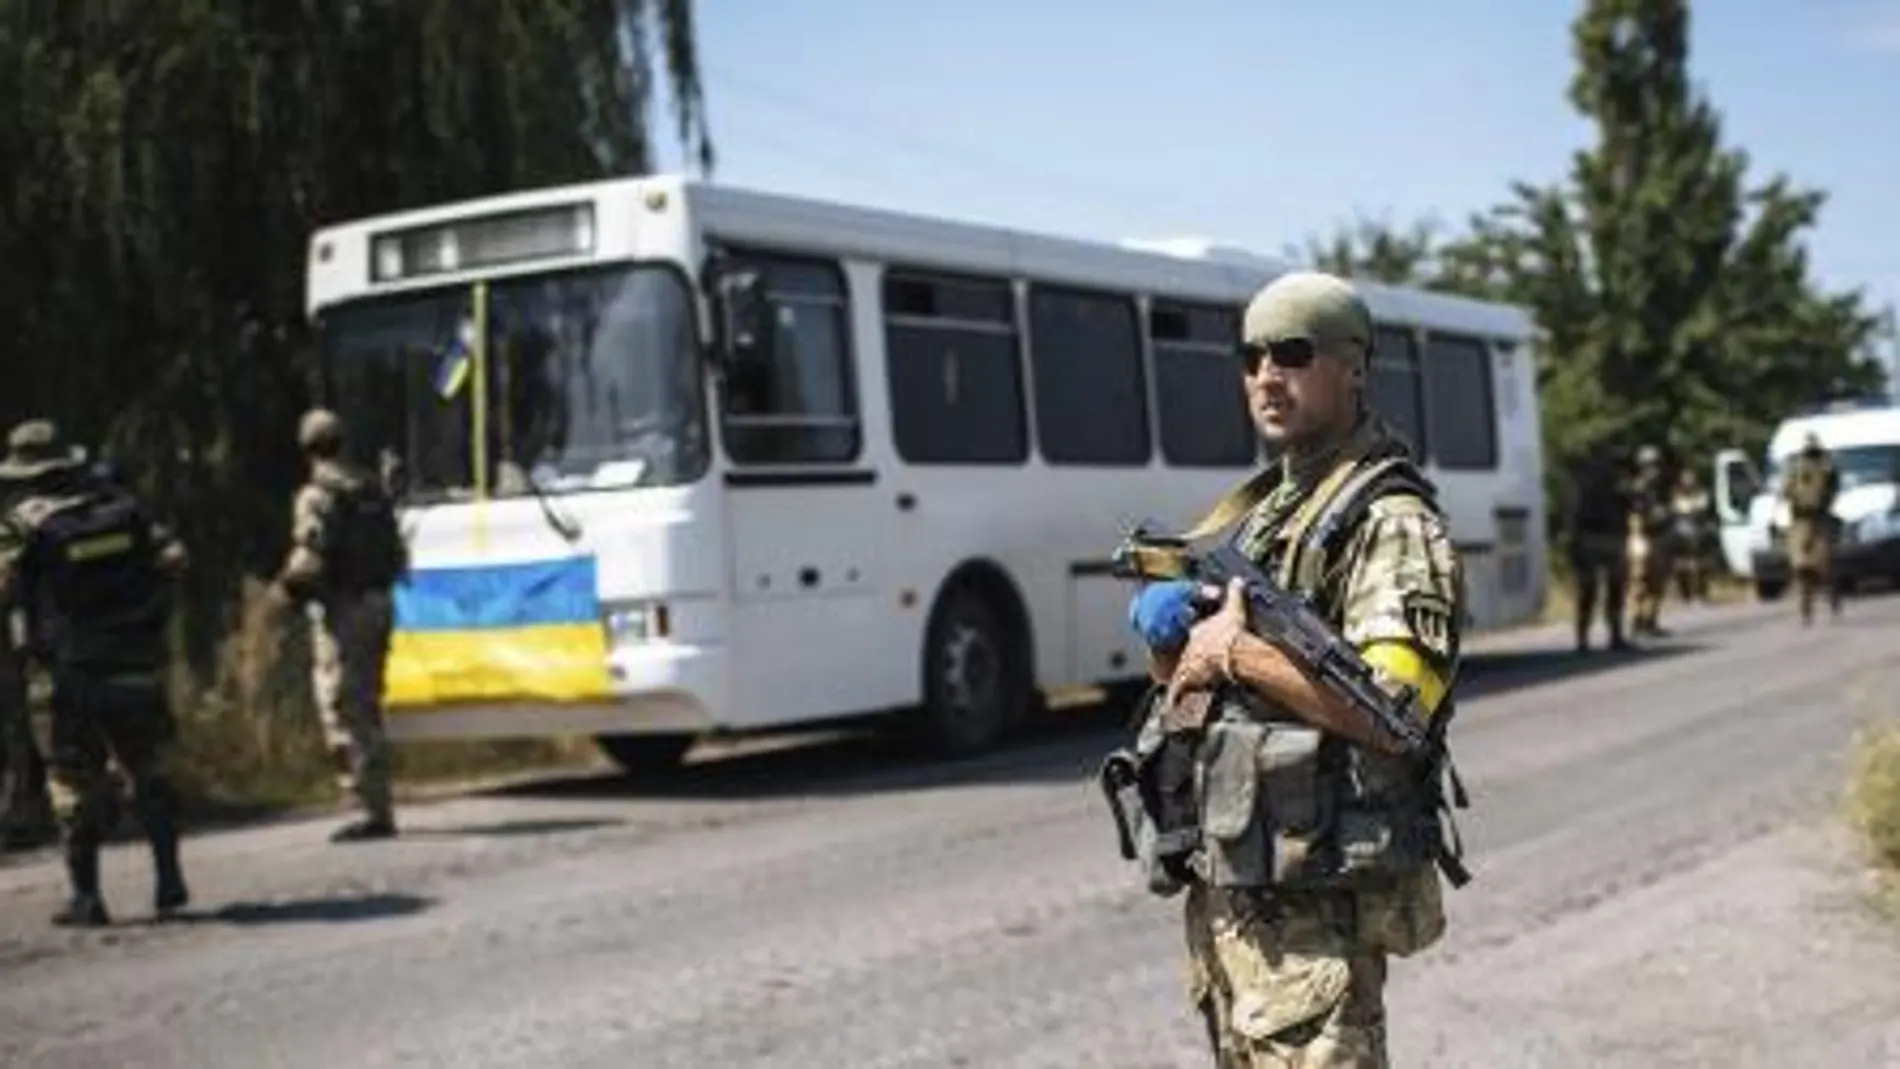 Un soldado ucraniano del batallón especial "Donbass", permanece en guardia durante una operación antiterrorista contra los milicianos prorrusos armados en la ciudad de Maryinka